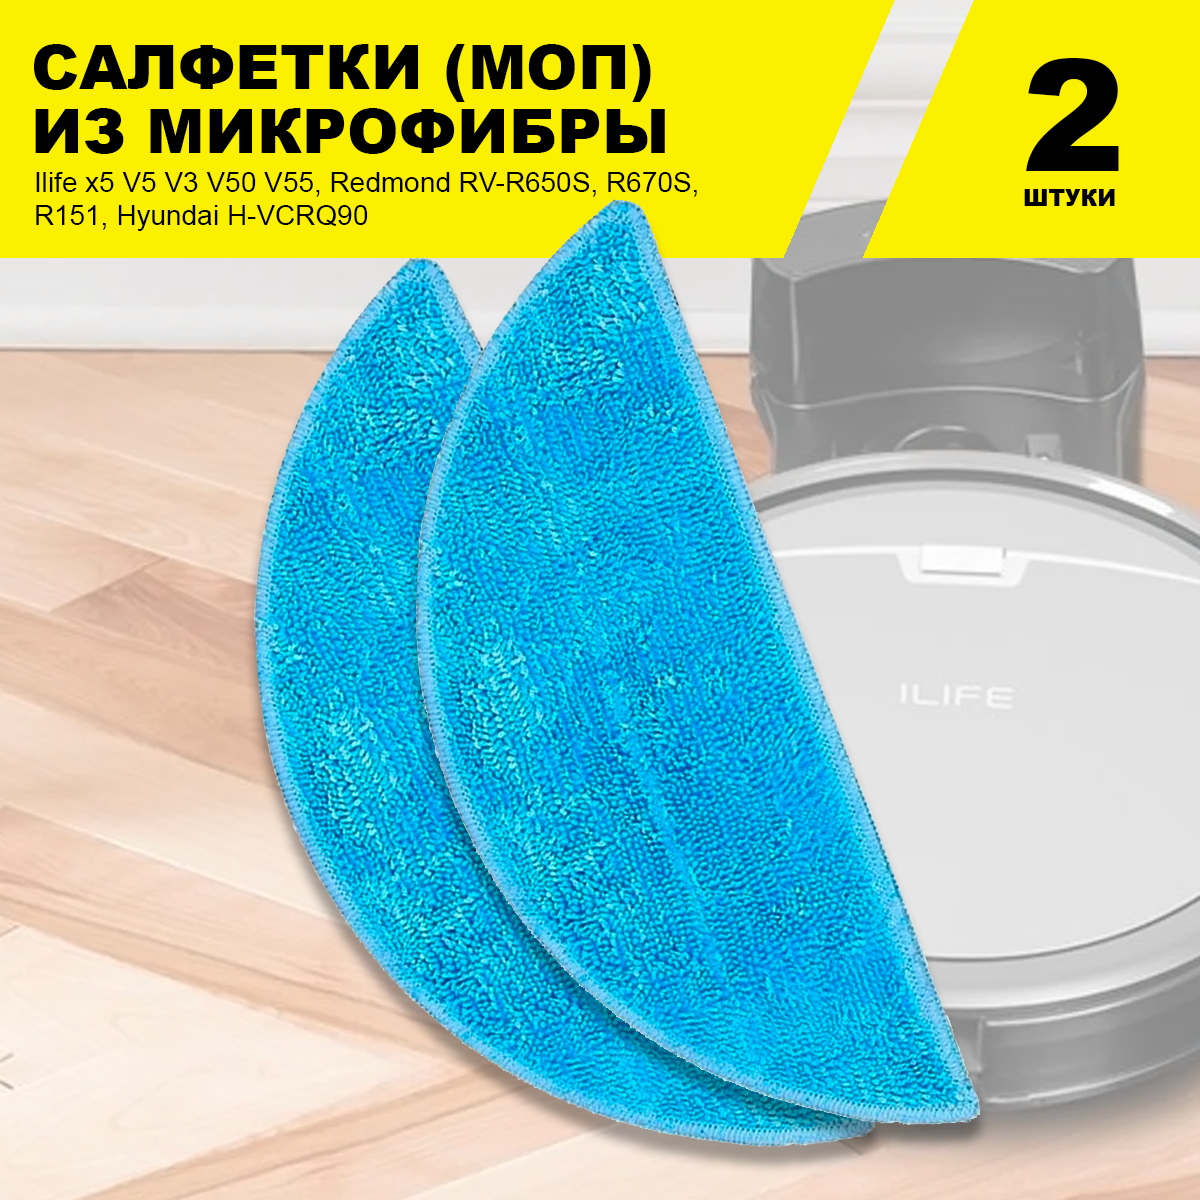 Салфетки (2шт) для влажной уборки для робот-пылесоса Ilife x5 V5 V3 V50 V55 Redmond RV-R650S R670S R151 Hyundai H-VCRQ90